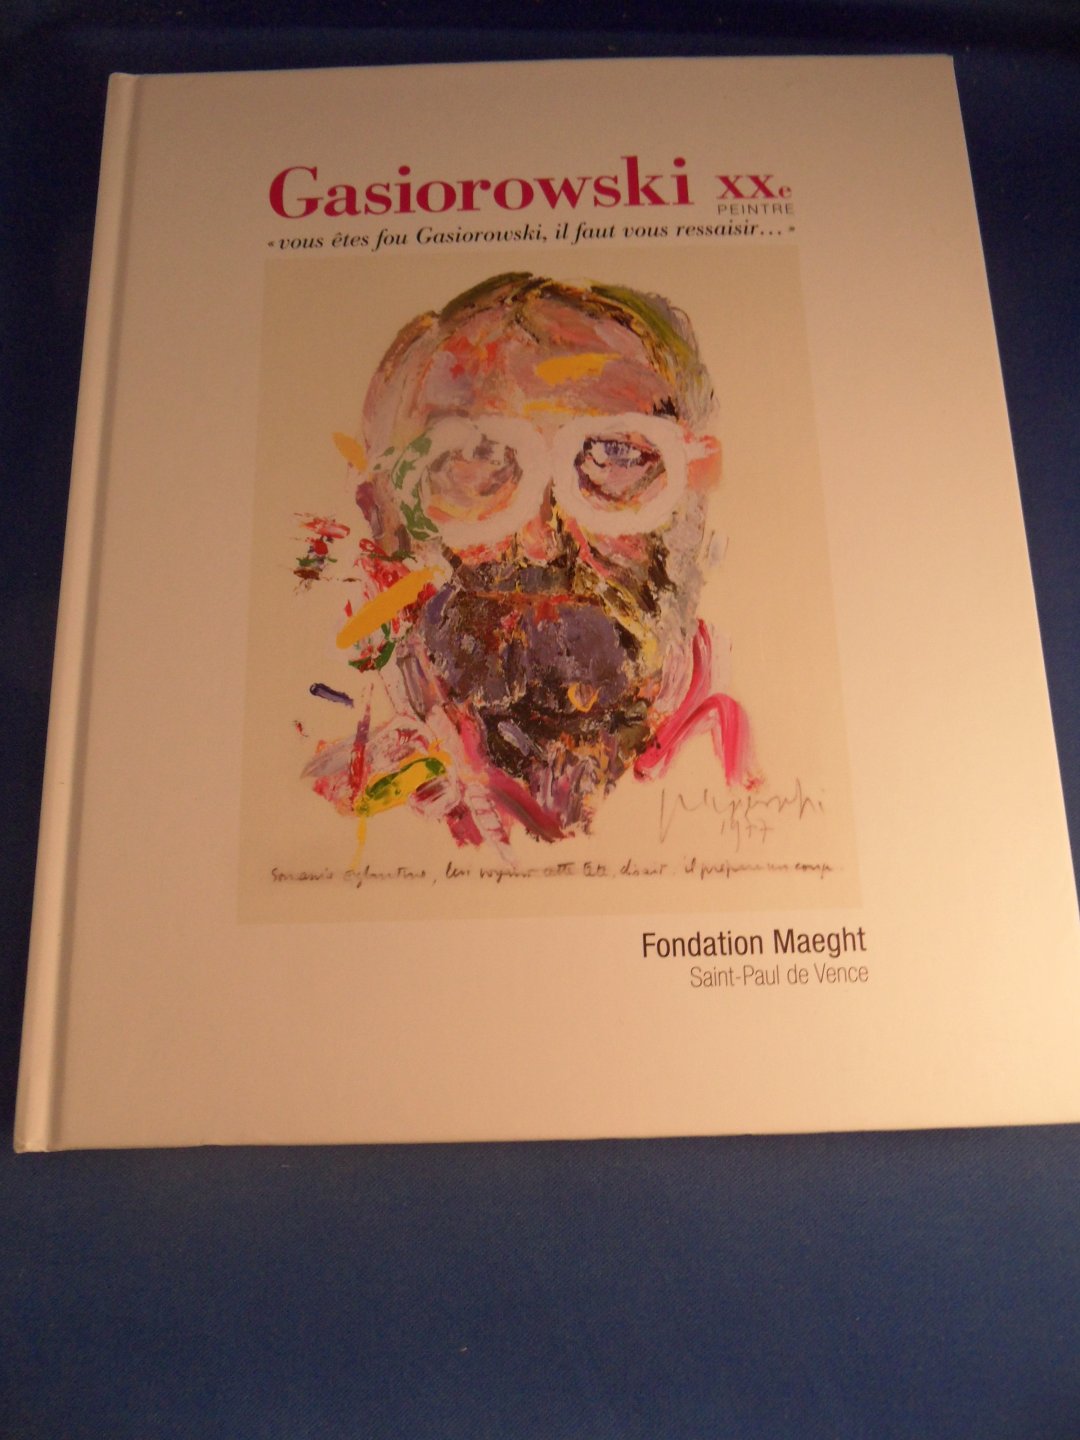 Gasiorowski - Gasiorowski XXe Peintre: Vous etes fou Gasiorowski il faut vous ressaisir